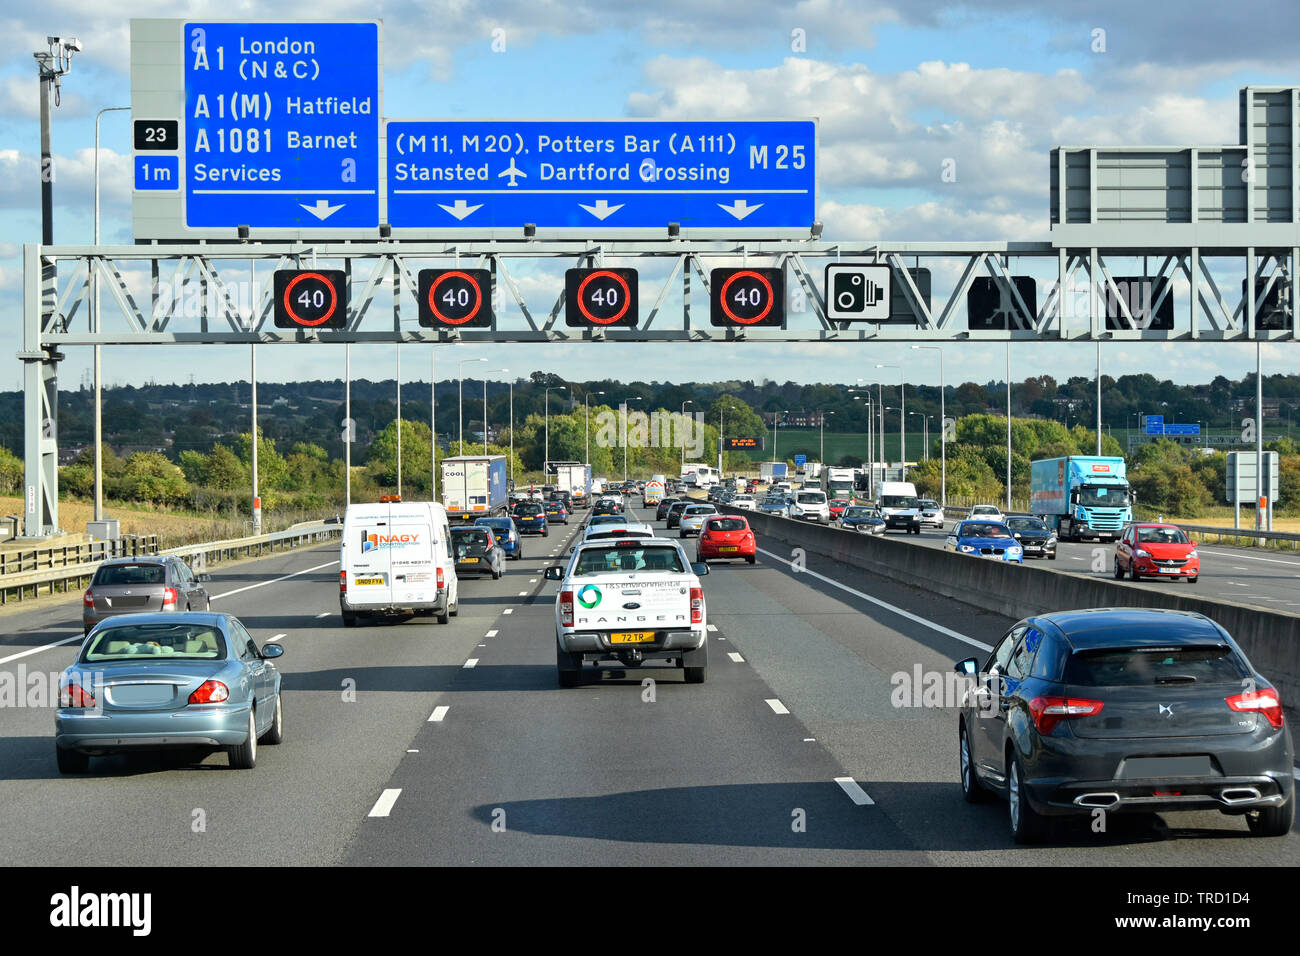 Freitag PM Berufsverkehr Autobahn M25 & blaue Route Schild auf Overhead gantry Elektronische variable Geschwindigkeit Zeichen bei 40 MPH London England Grossbritannien Stockfoto